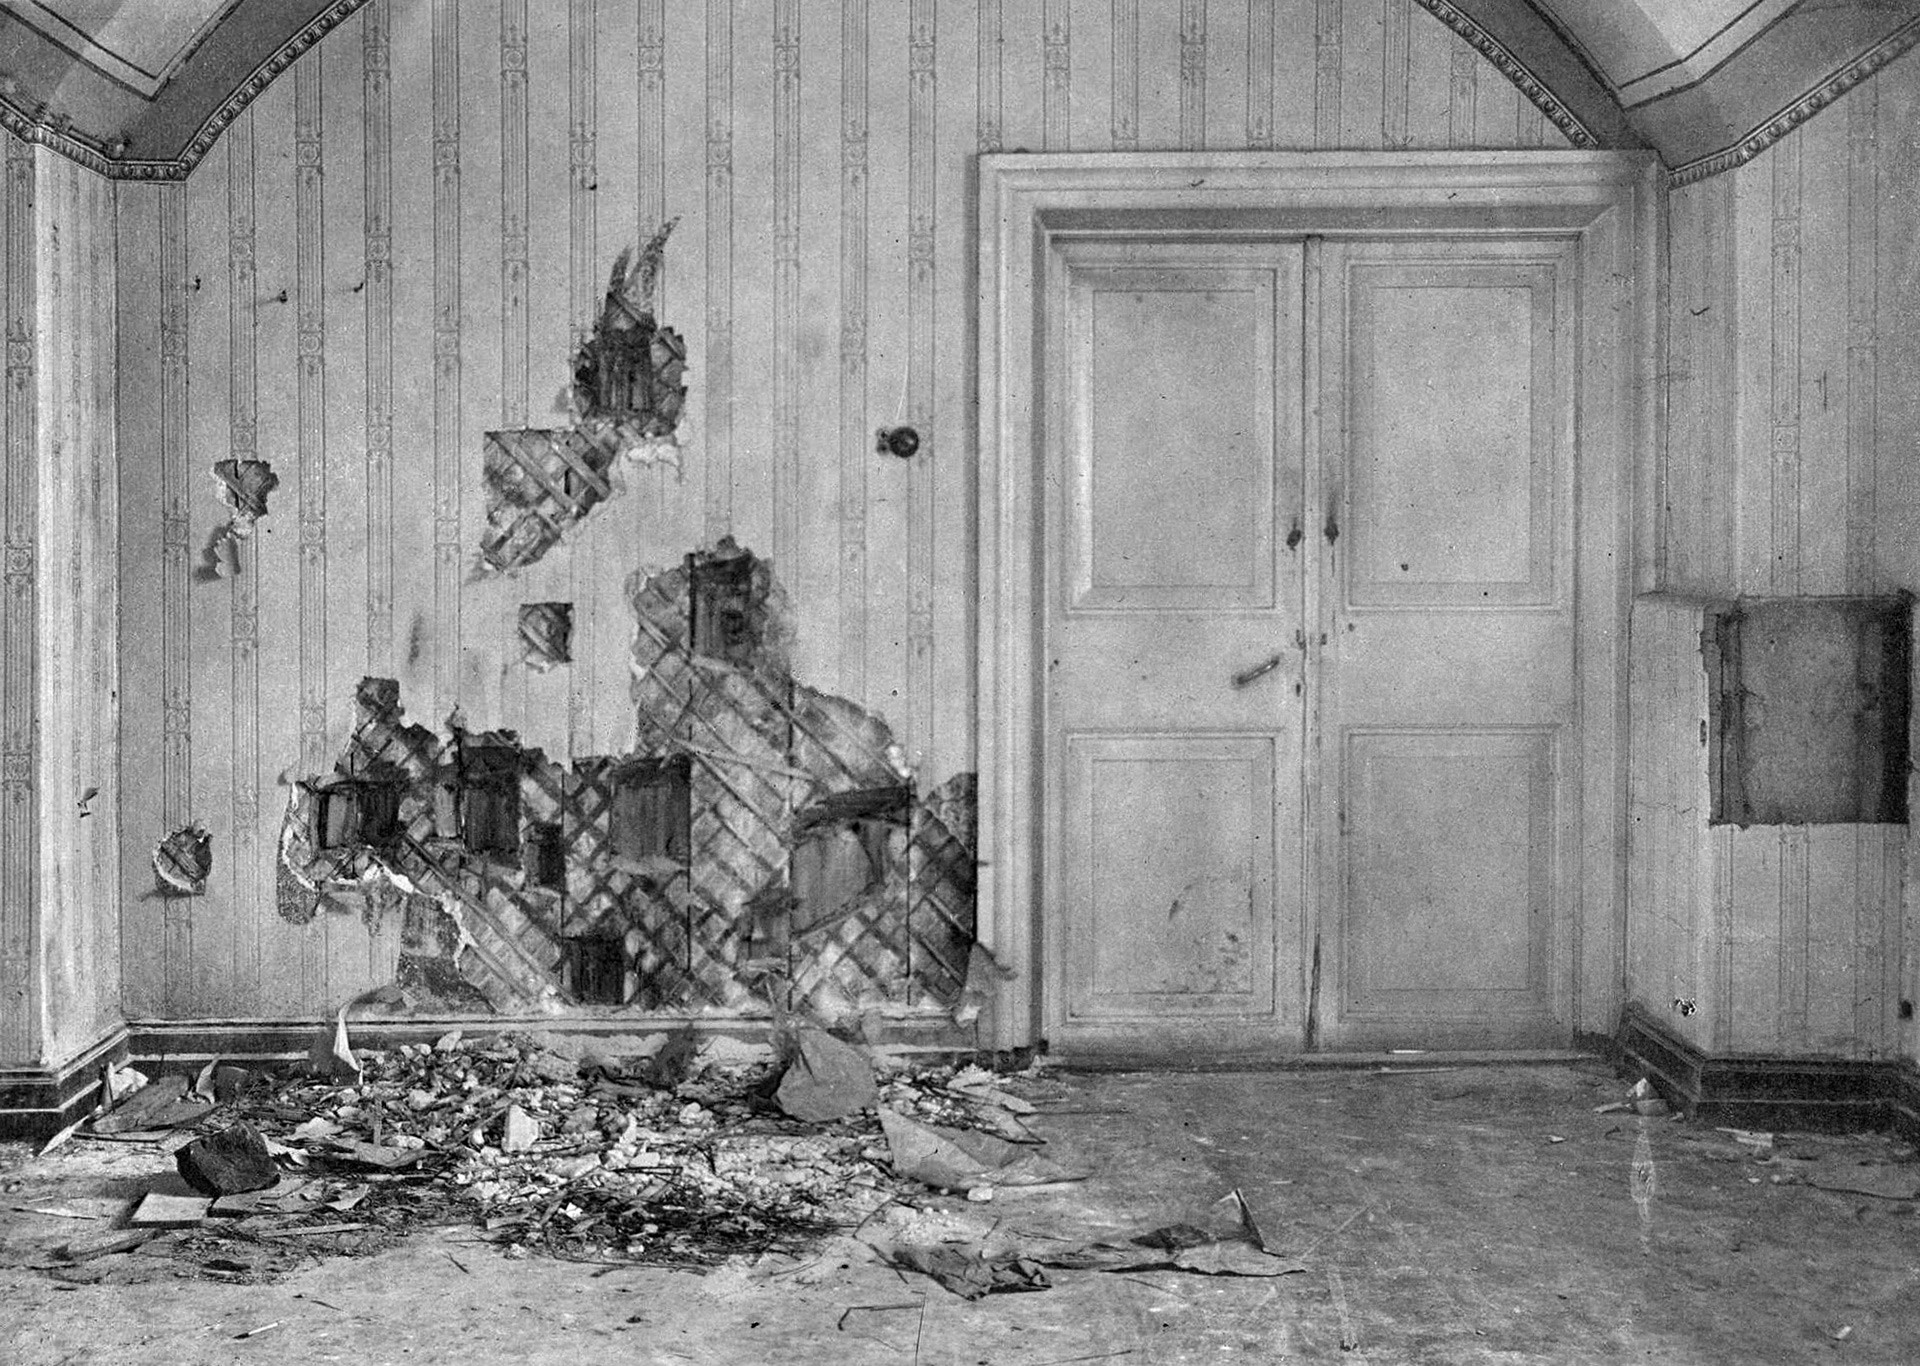 ニコライ2世一家が銃殺されたイパチエフ館。壁は探索者により銃弾などの証拠の探索で引き剥がされていた。